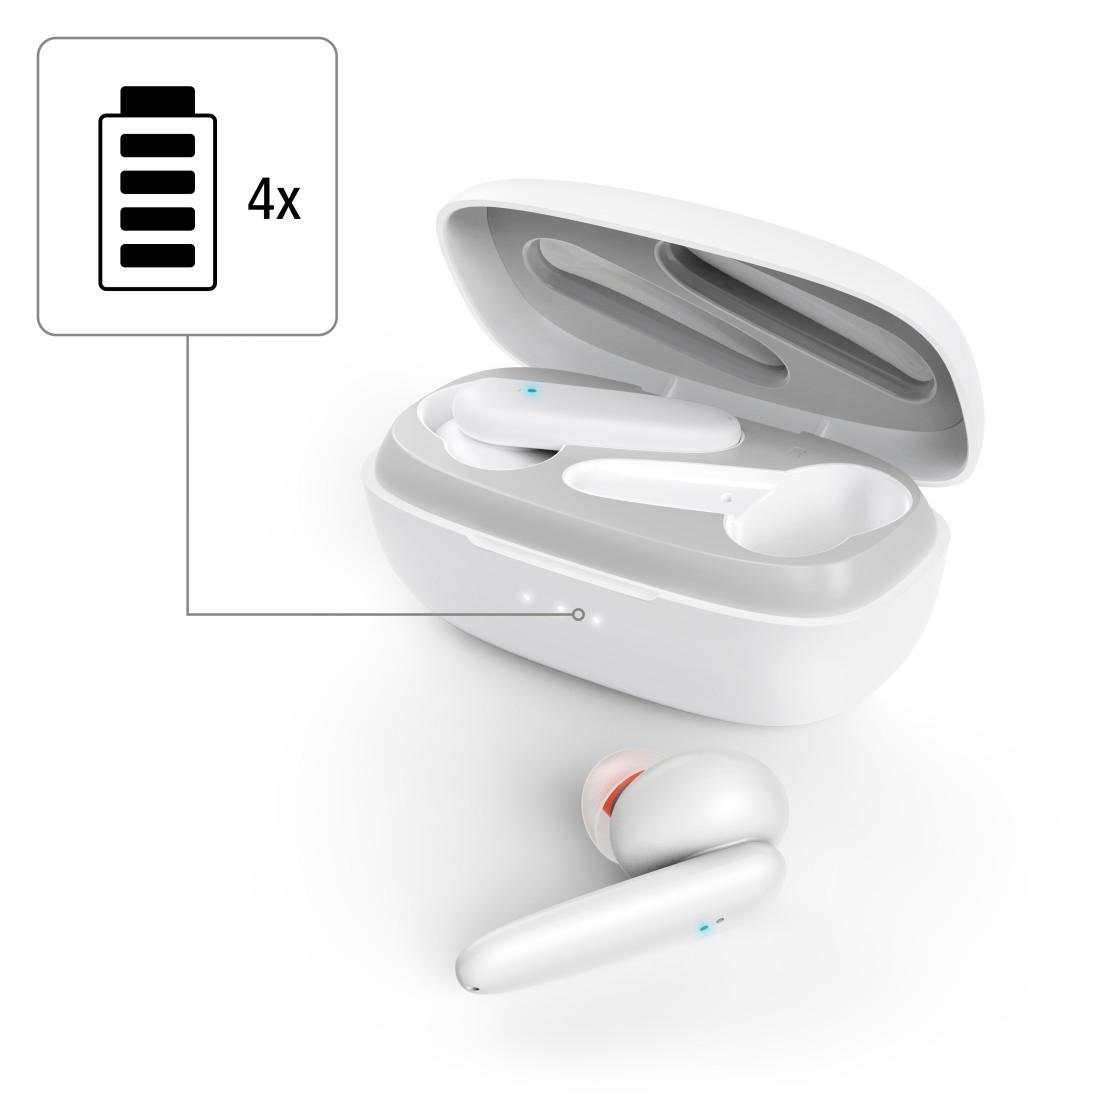 Bluetooth®-Kopfhörer Sprachsteuerung, Hama Freisprechfunktion, Noise (ANC), Wireless Passion True weiß Kopfhörer) (Active Cancelling noise Ear In Active cancelling TWS, Bluetooth-Kopfhörer Clear,